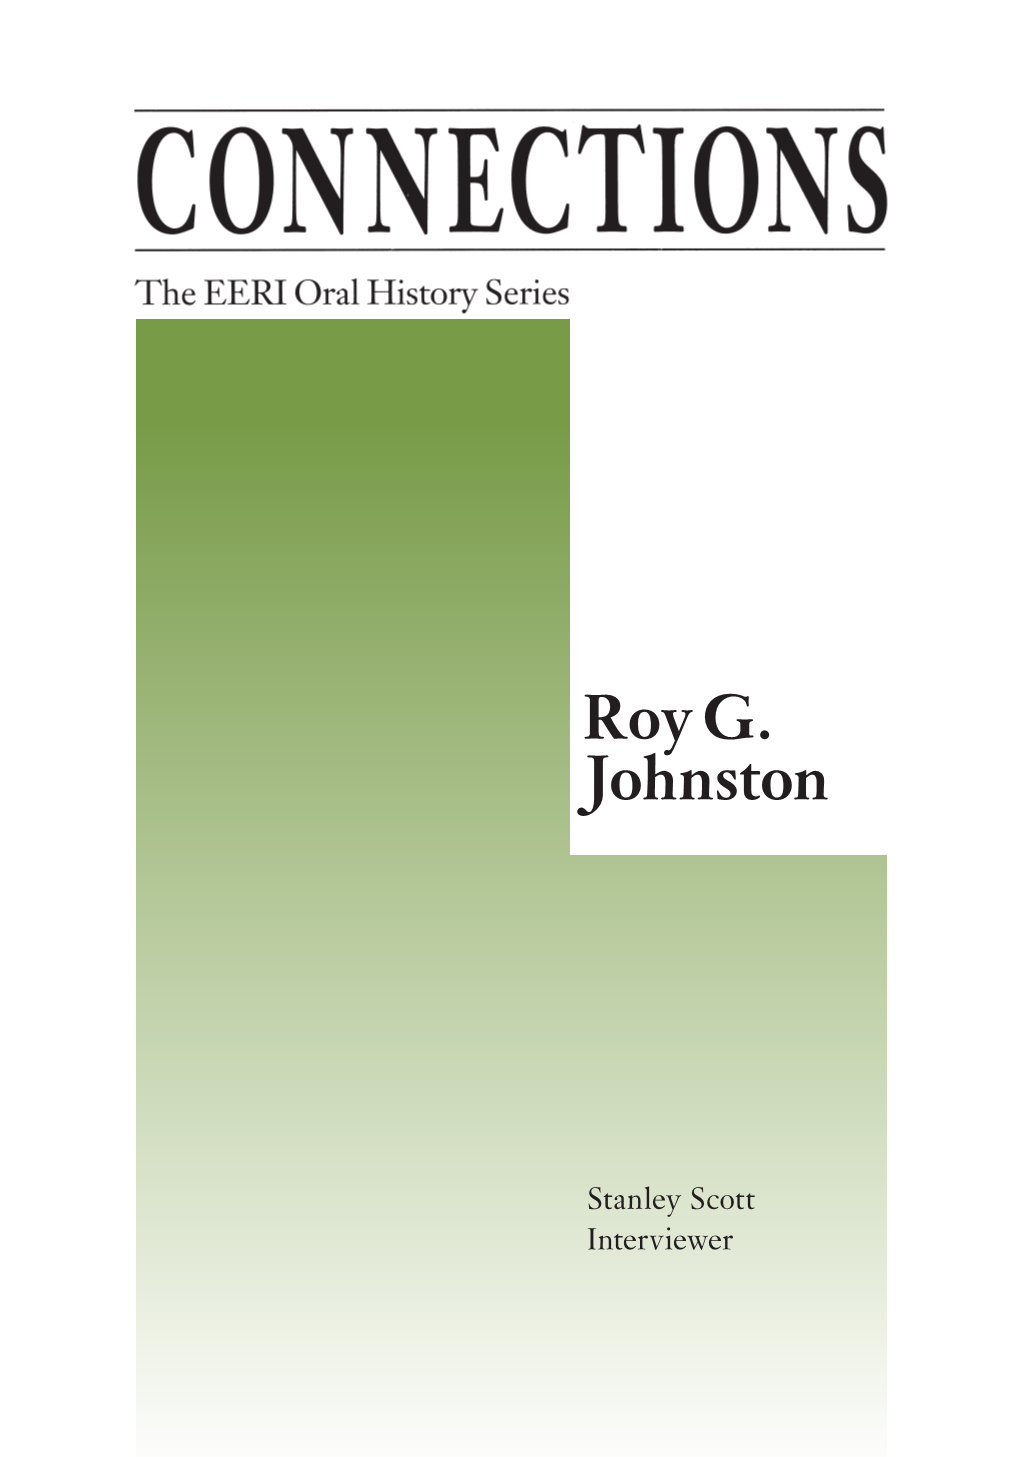 Roy G. Johnston